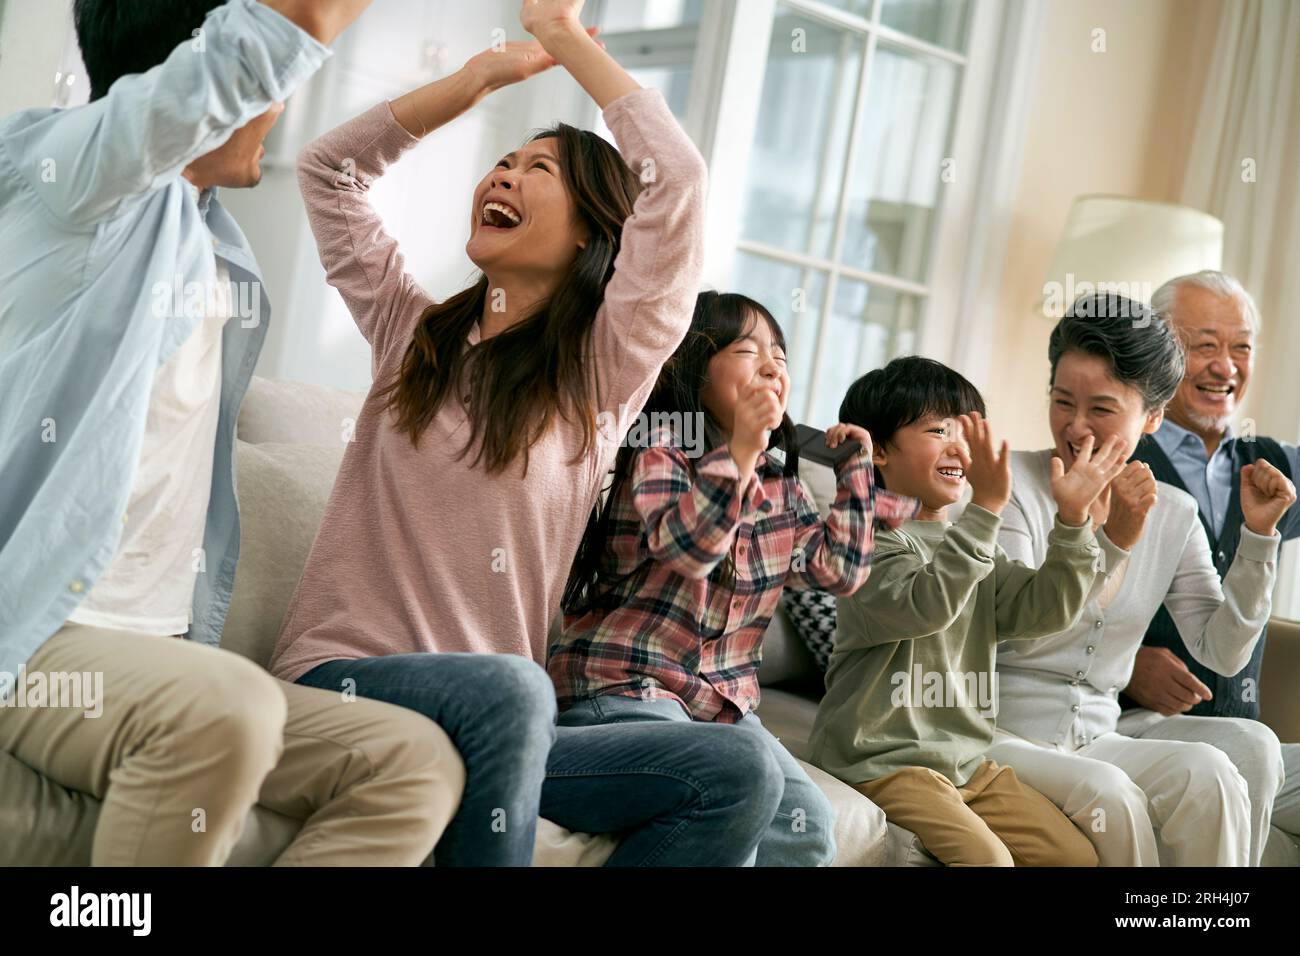 Eine asiatische Familie der 3. Generation, die zu Hause auf dem Sofa sitzt und das Tor und den Sieg feiert, während sie sich die Live-Übertragung des Fußballspiels ansieht Stockfoto